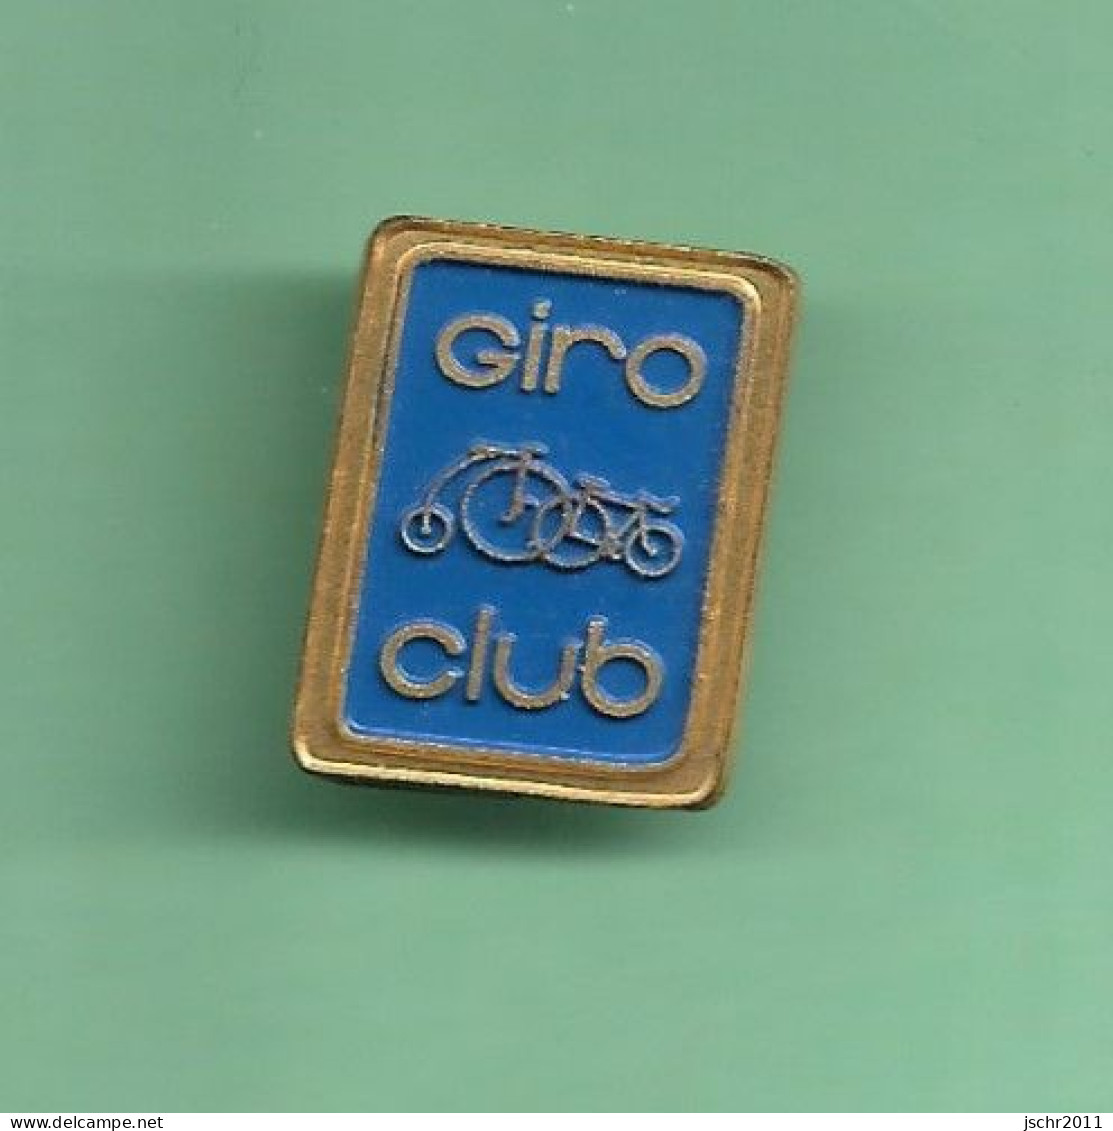 1 Pin's CYCLISME *** GIRO CLUB *** WW02 (21-1) - Cyclisme